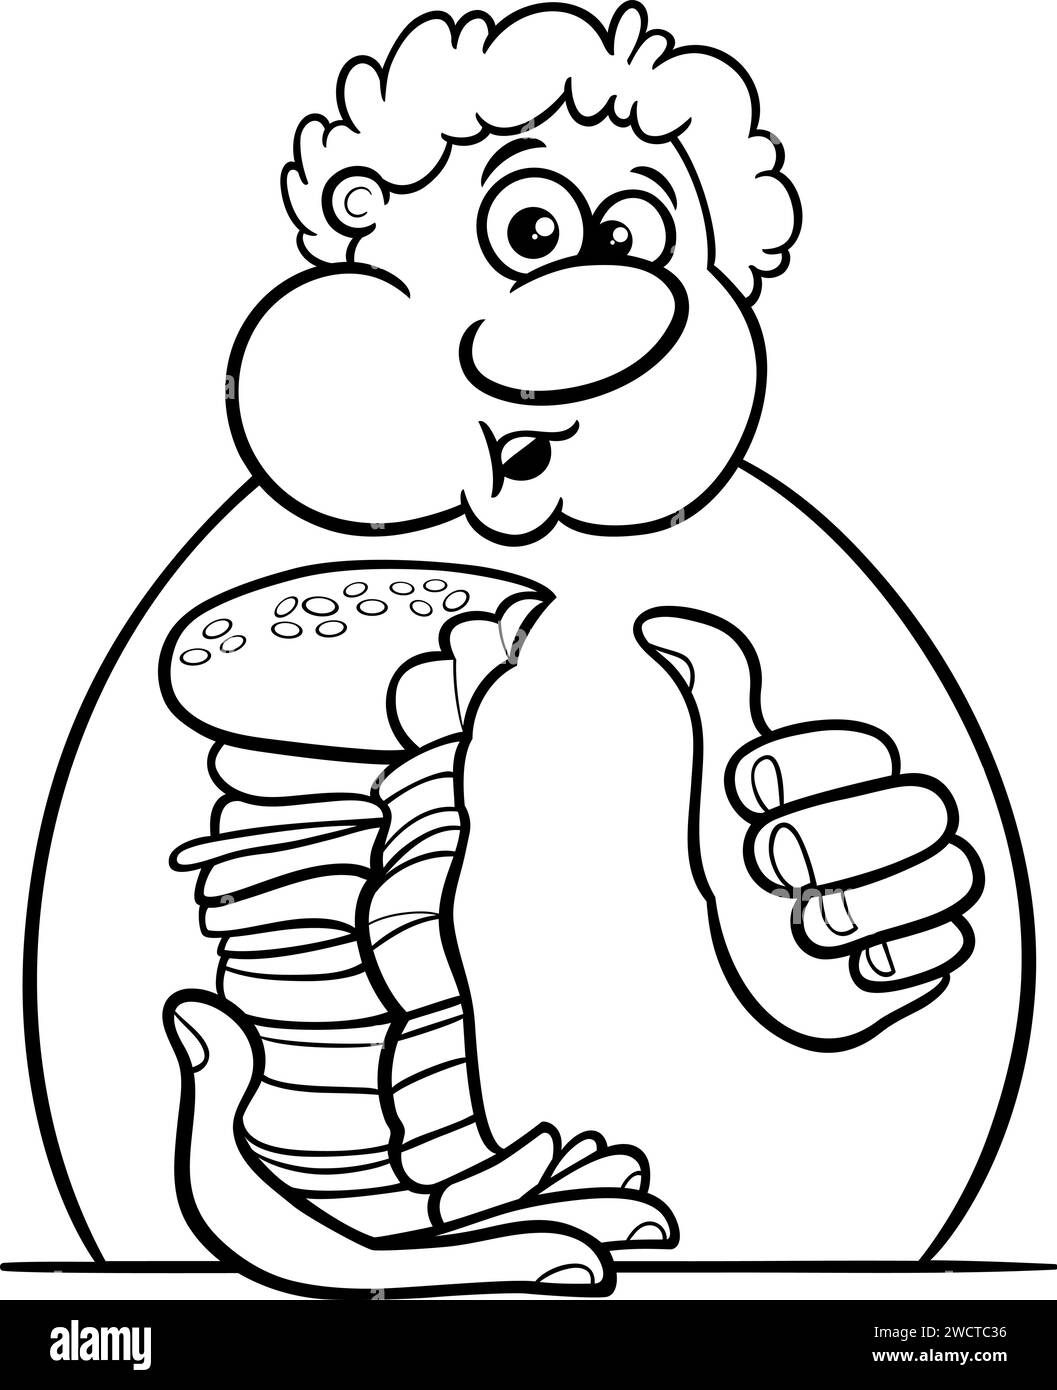 Cartoon illustration of a man eating big cheeseburger or hamburger coloring page Stock Vector